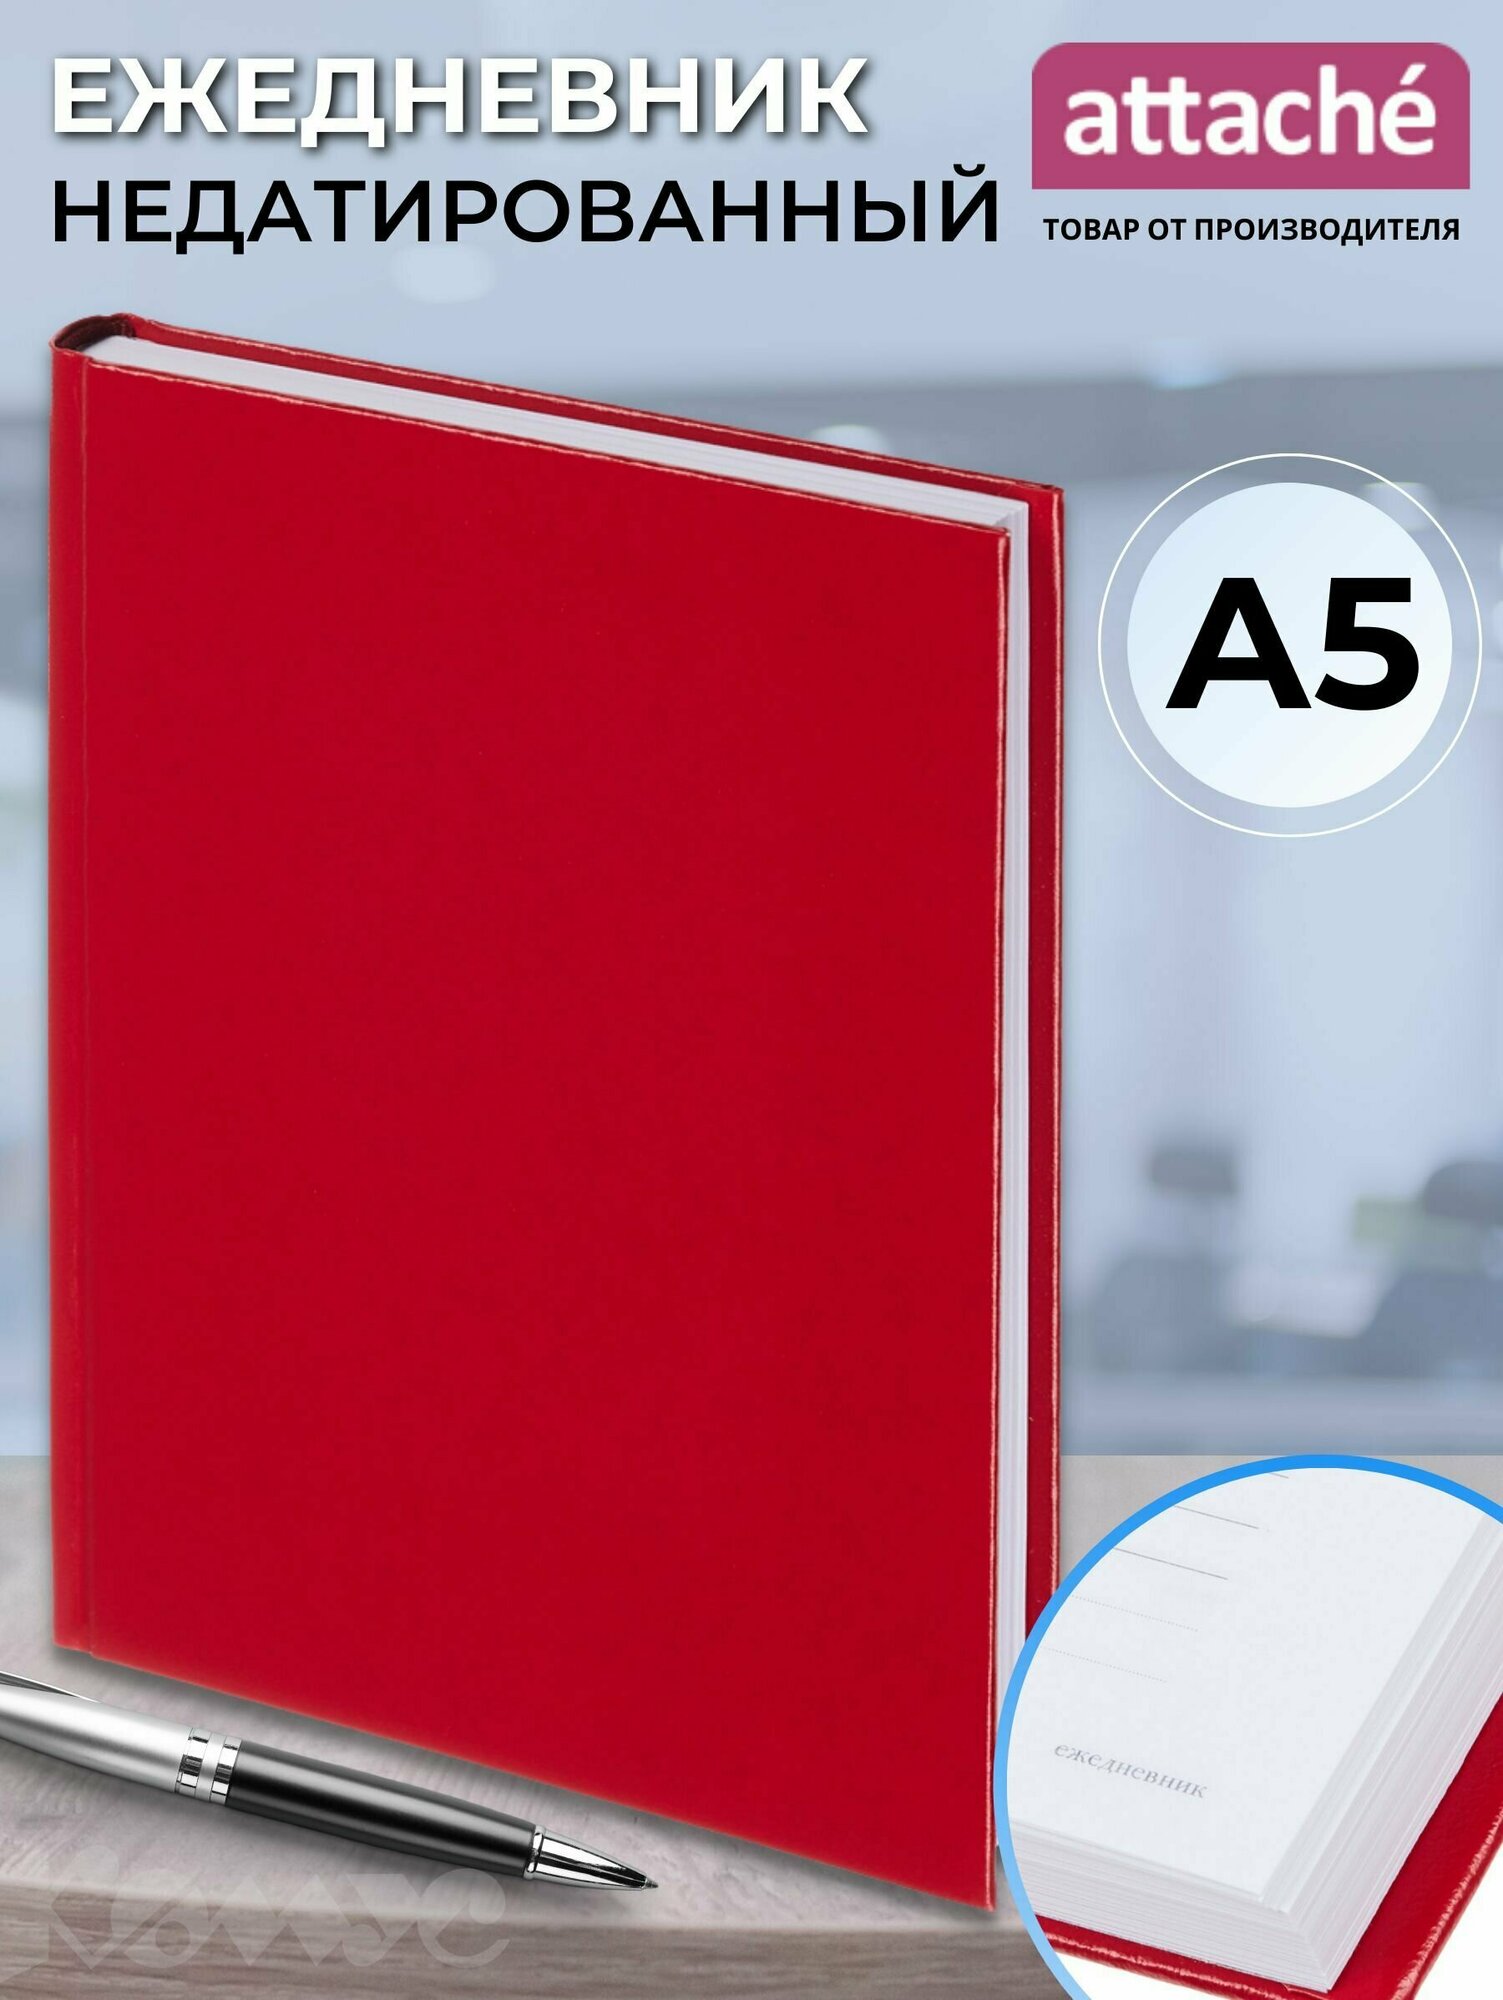 Ежедневник недатированный Attache Ideal New A5+ (146x206 мм), балакрон, 136 листов, красный